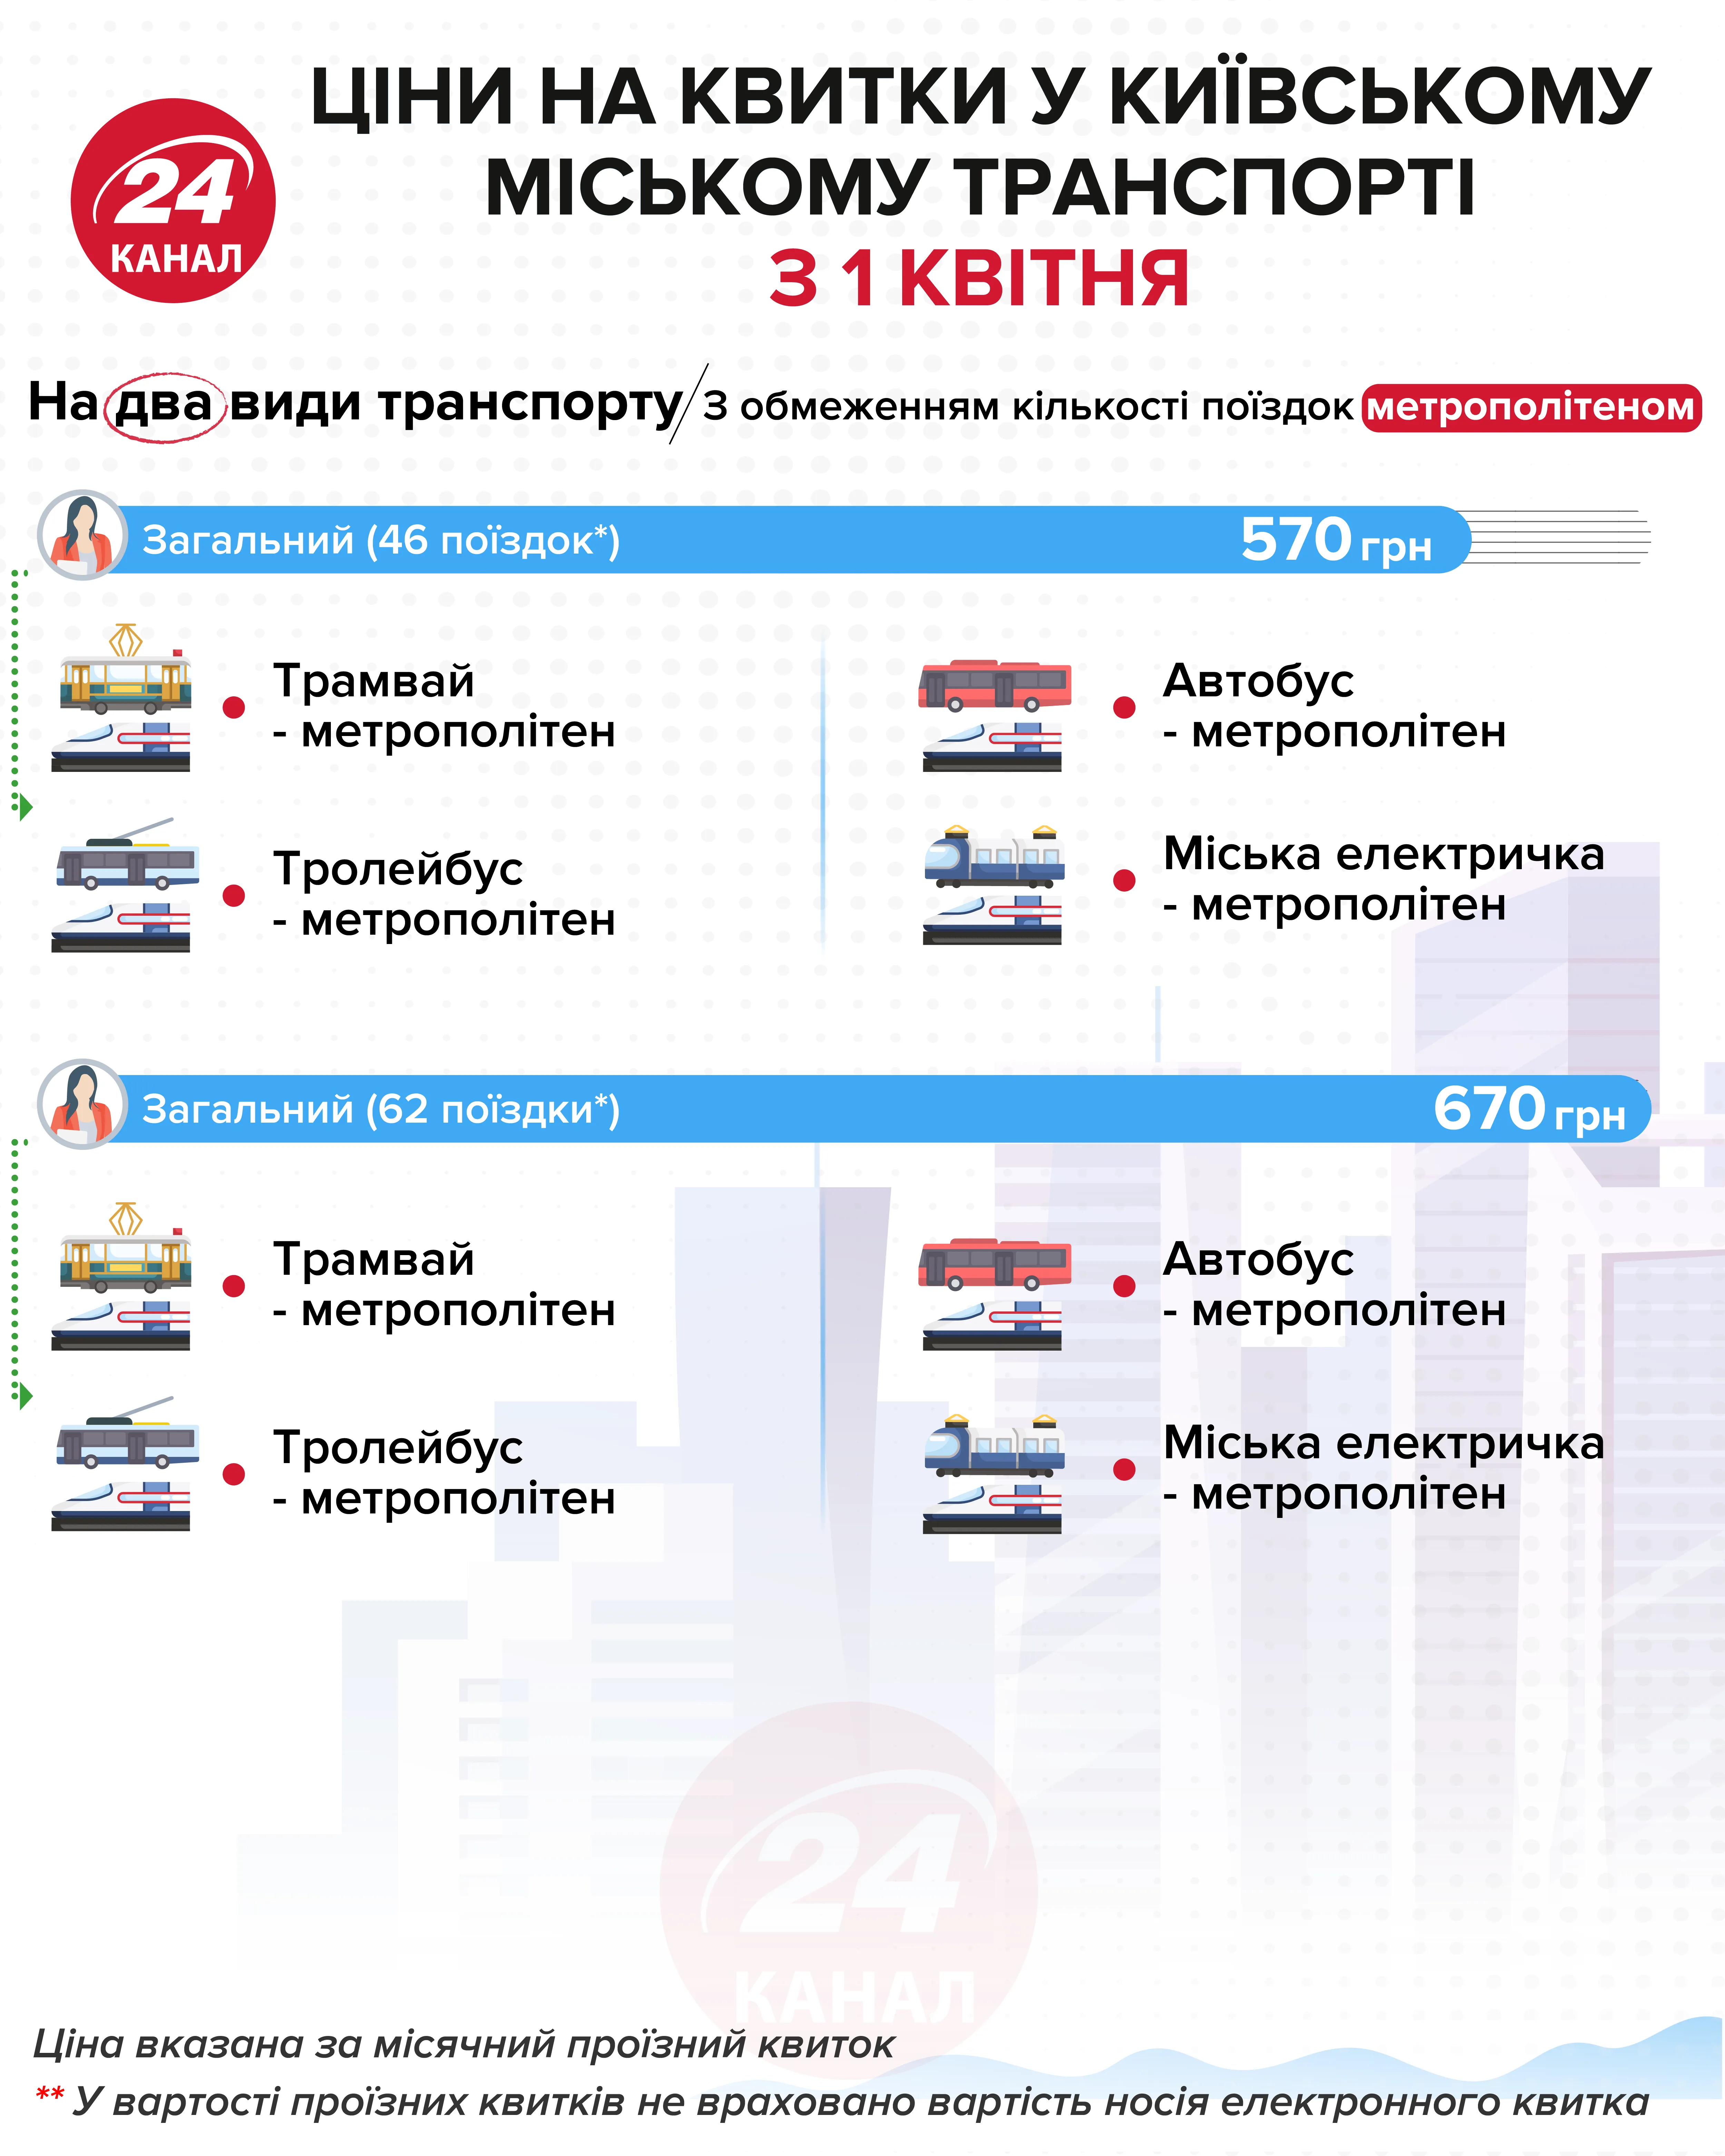 Стоимость проездного на два вида транспорта  Инфографика 24 канала